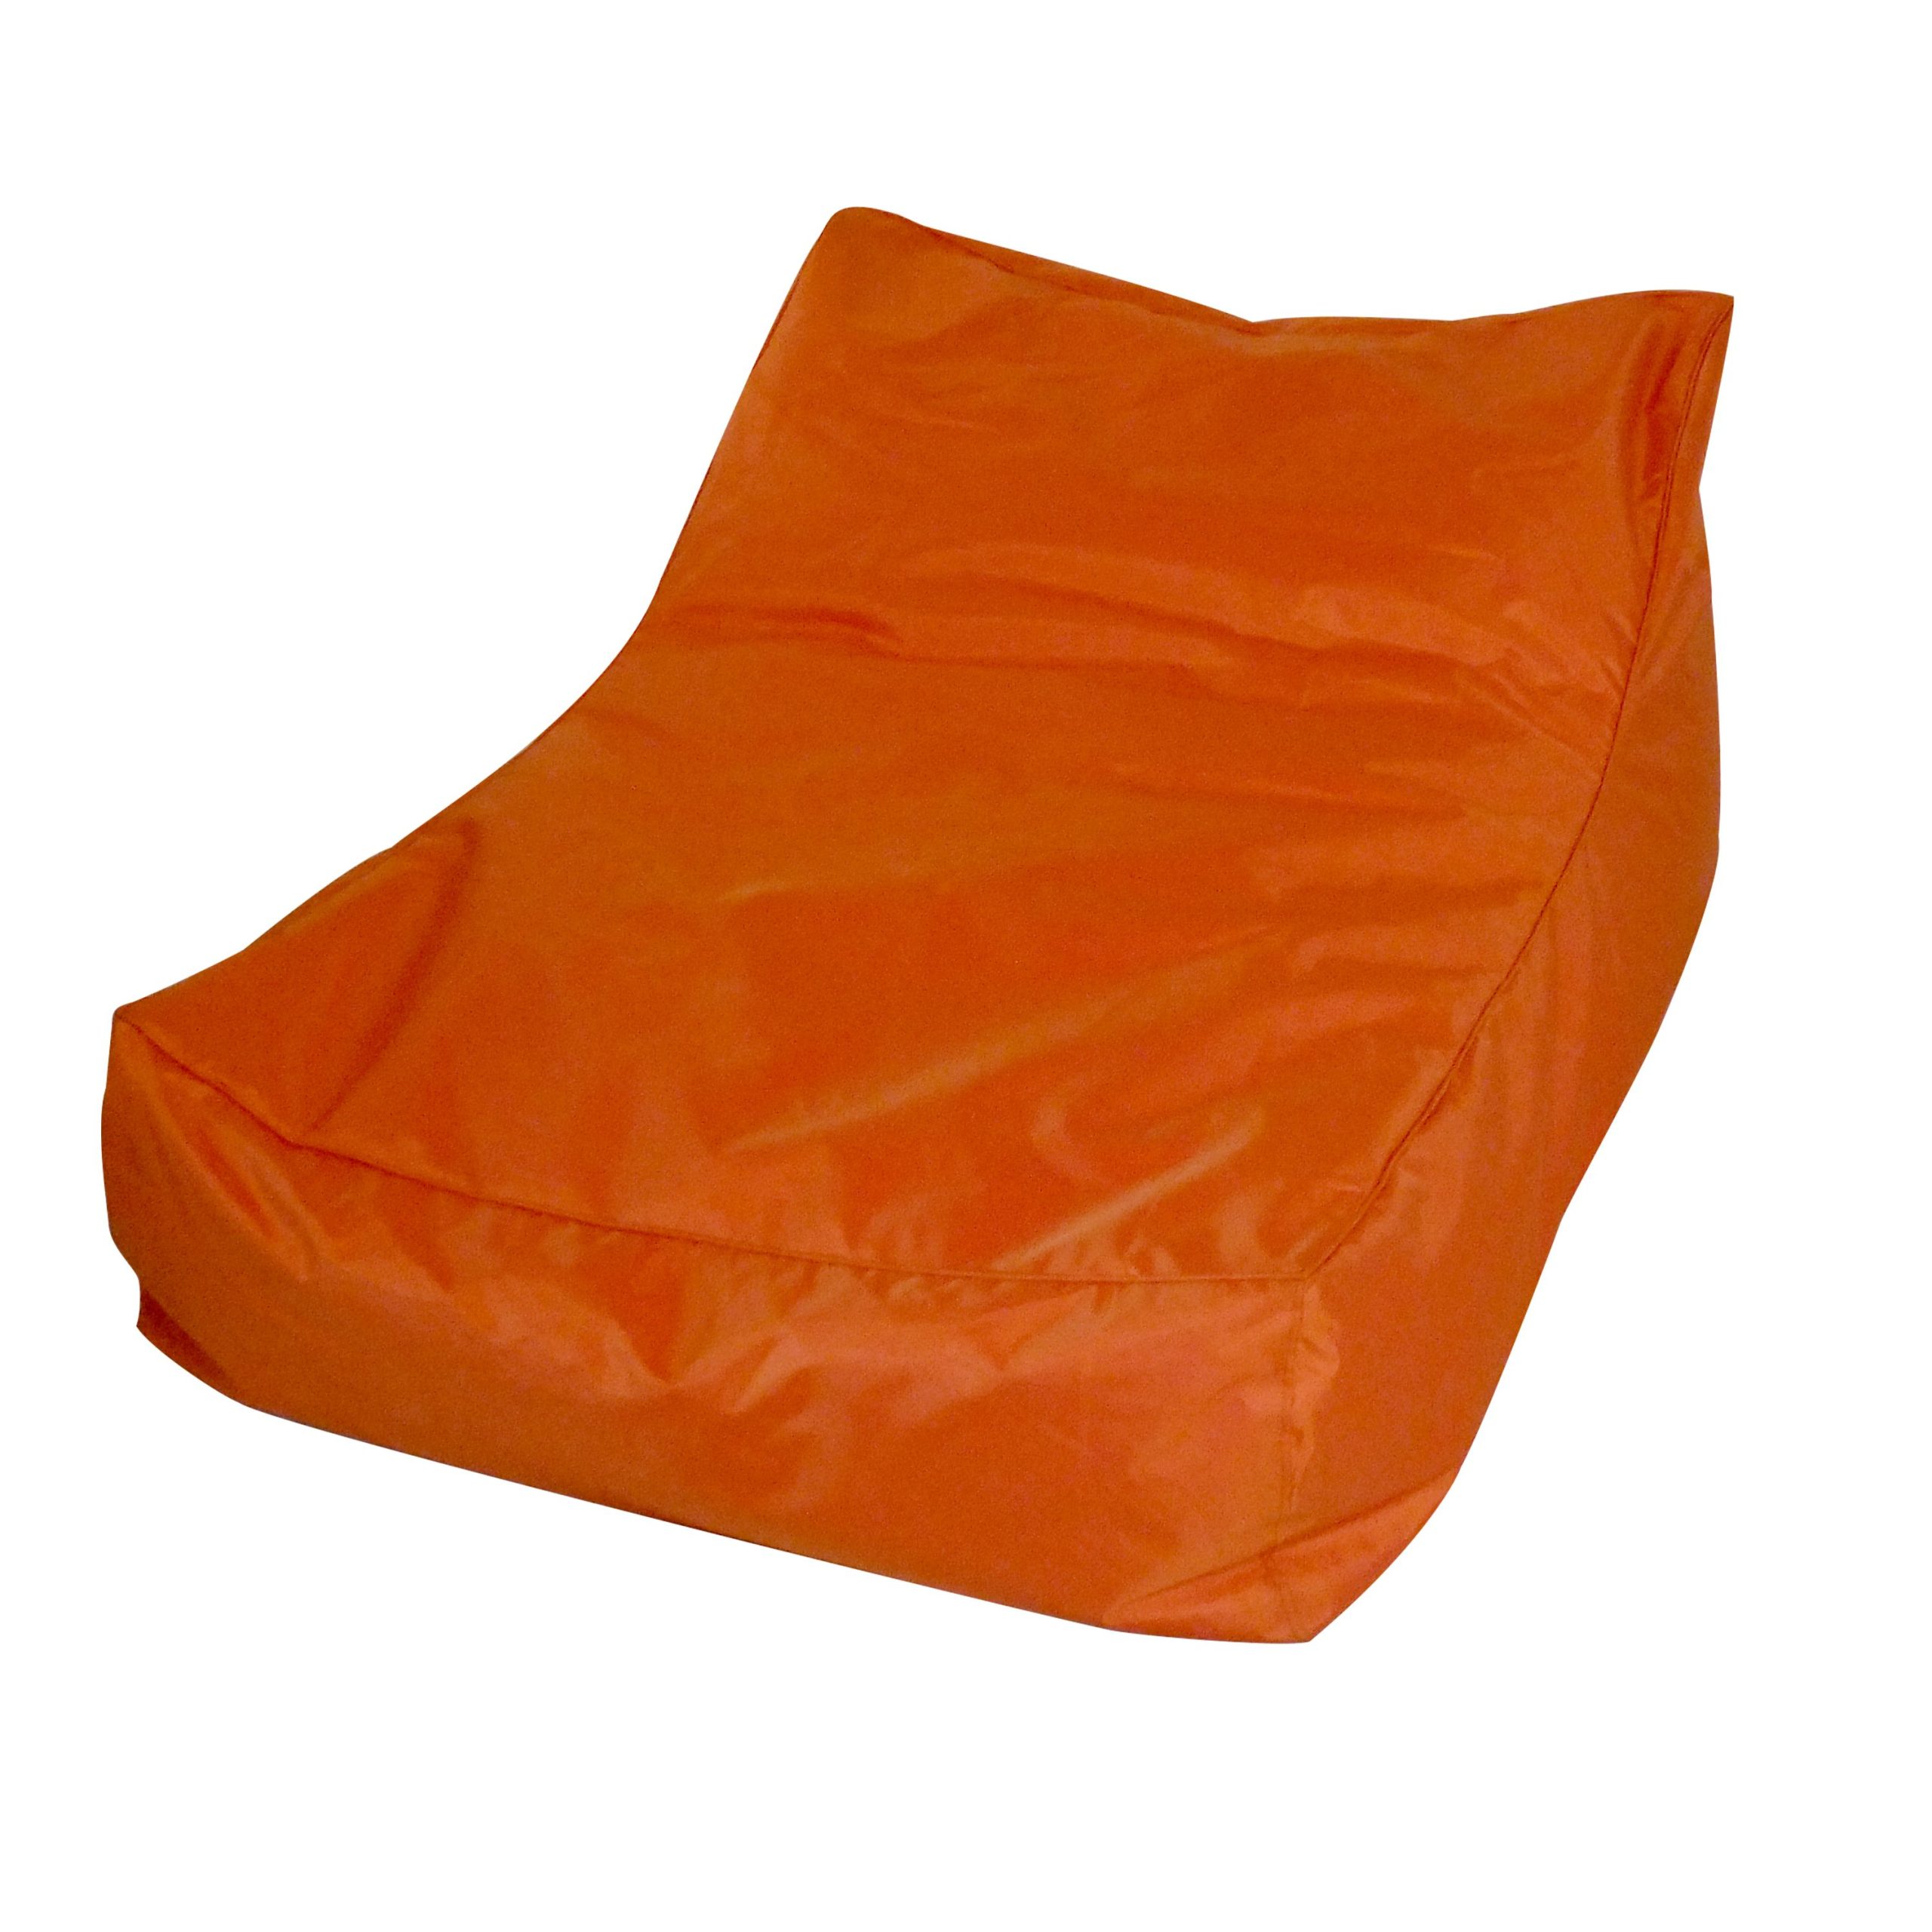 PP15003 – Bean Bag Sofa Bed